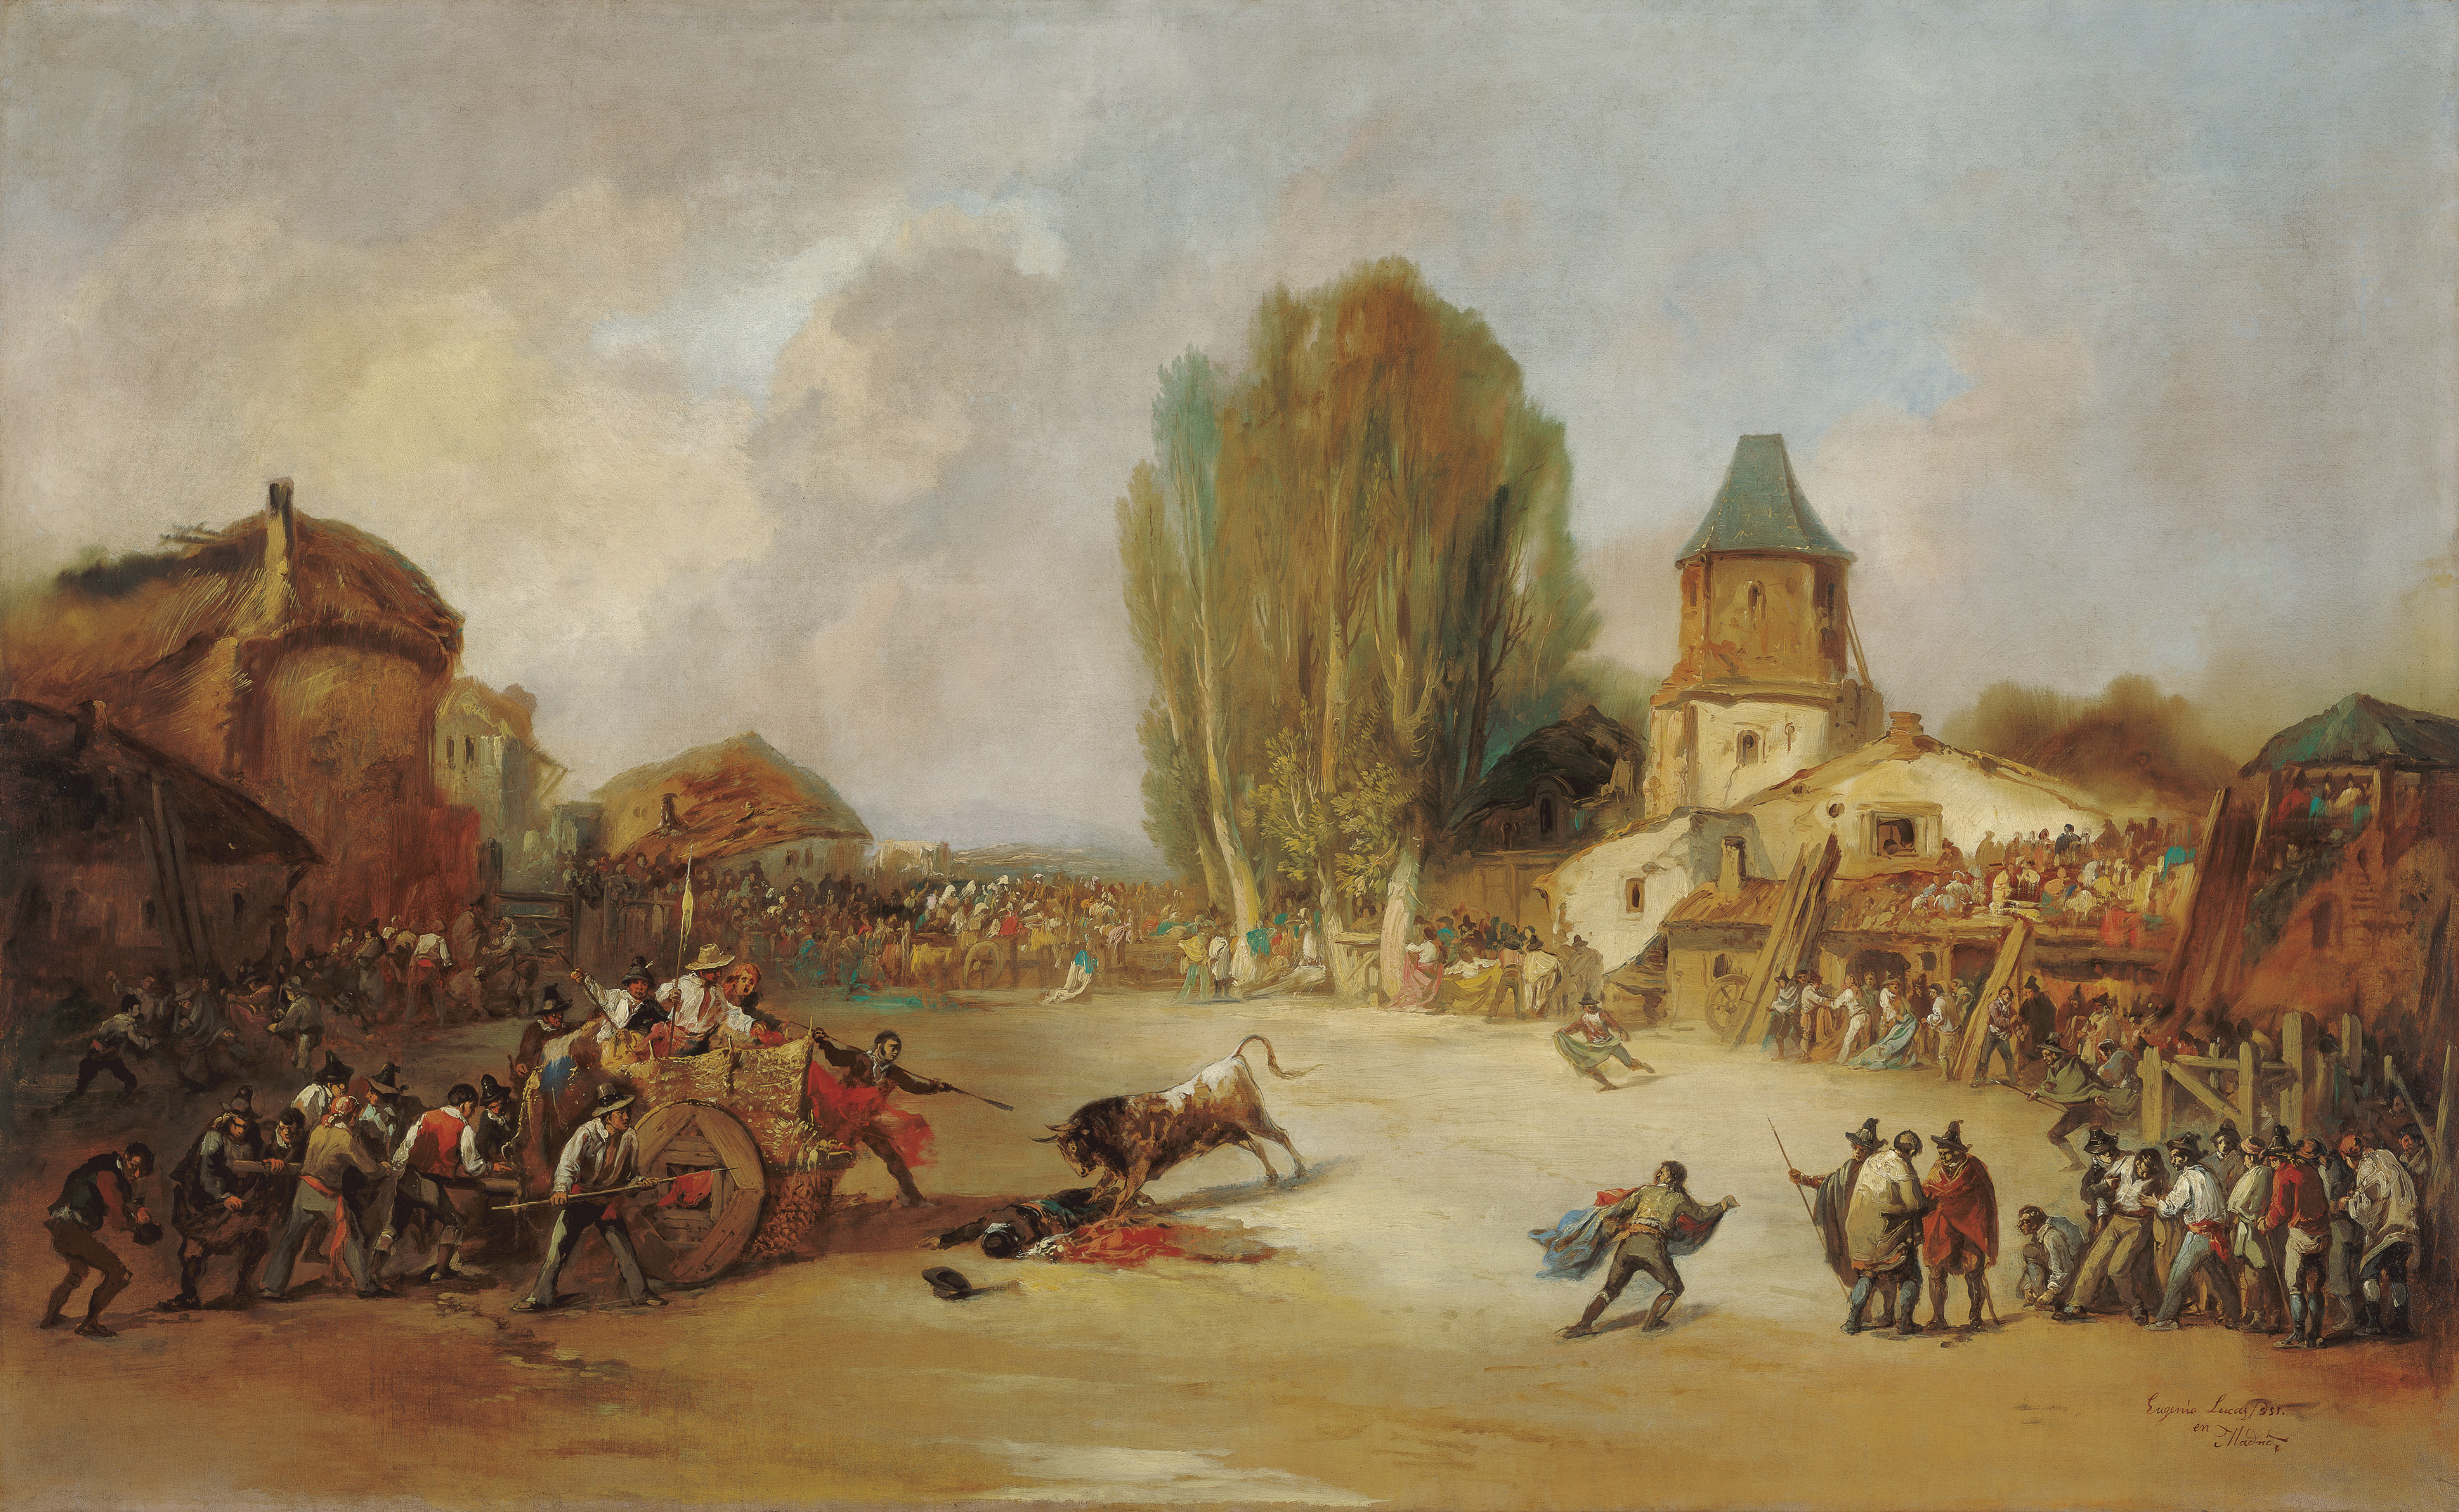 Goring at a Village Bullfight